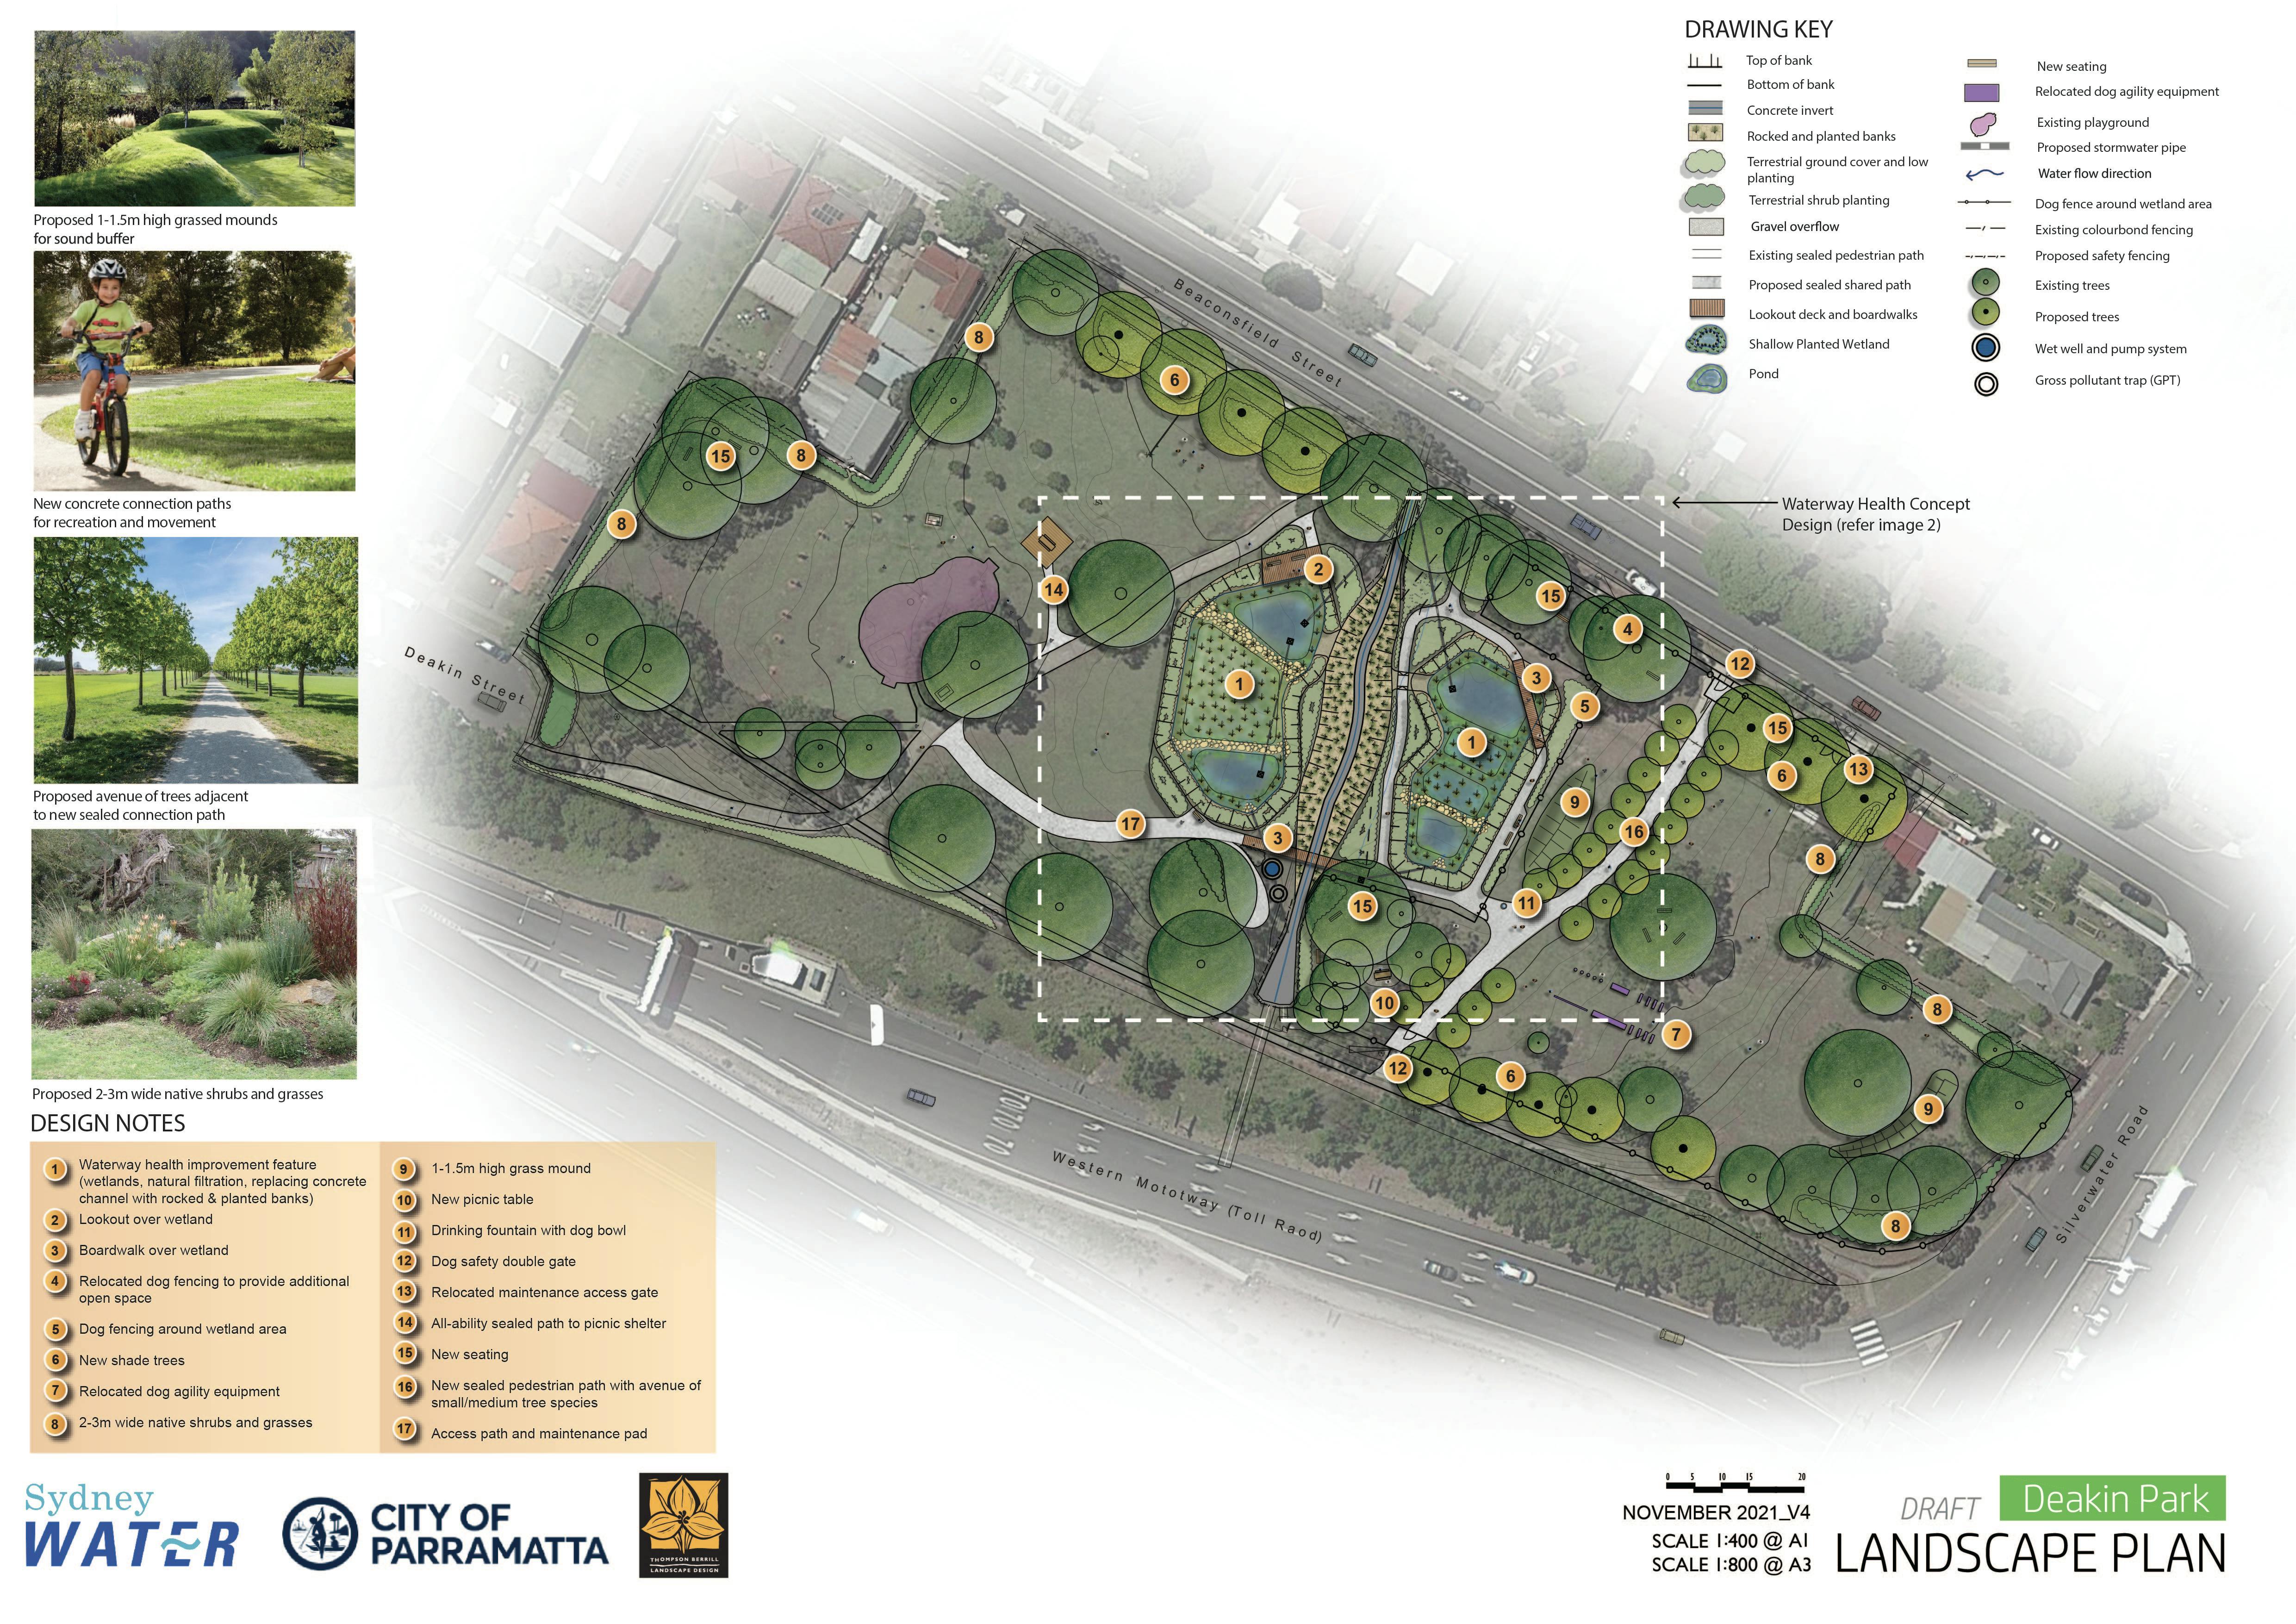 Deakin Park Landscape Plan